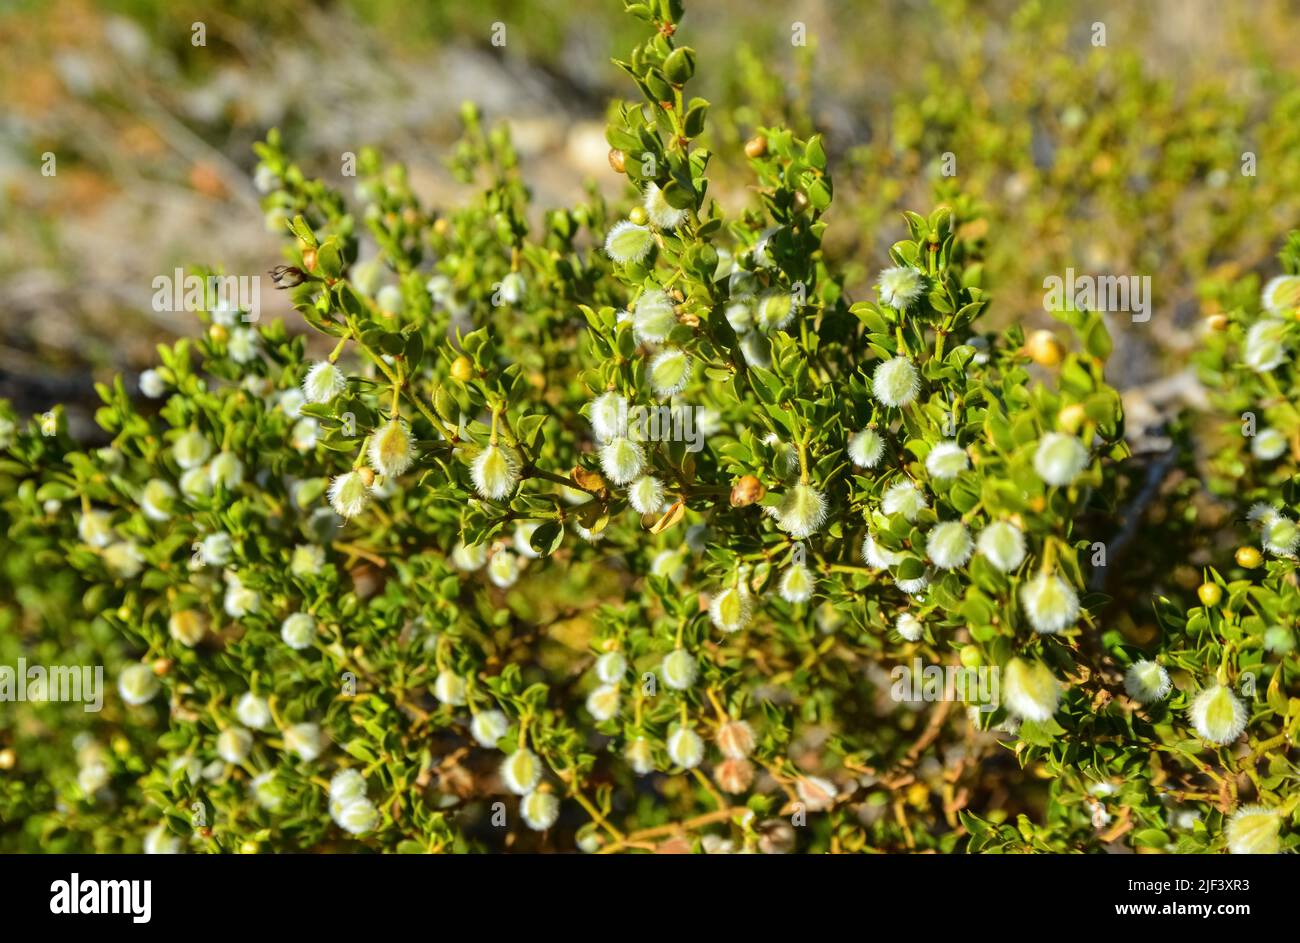 Flauschige Früchte mit Samen von trockenheitstoleranten Xerophyt-Pflanzen in der Wüste, New Mexico Stockfoto